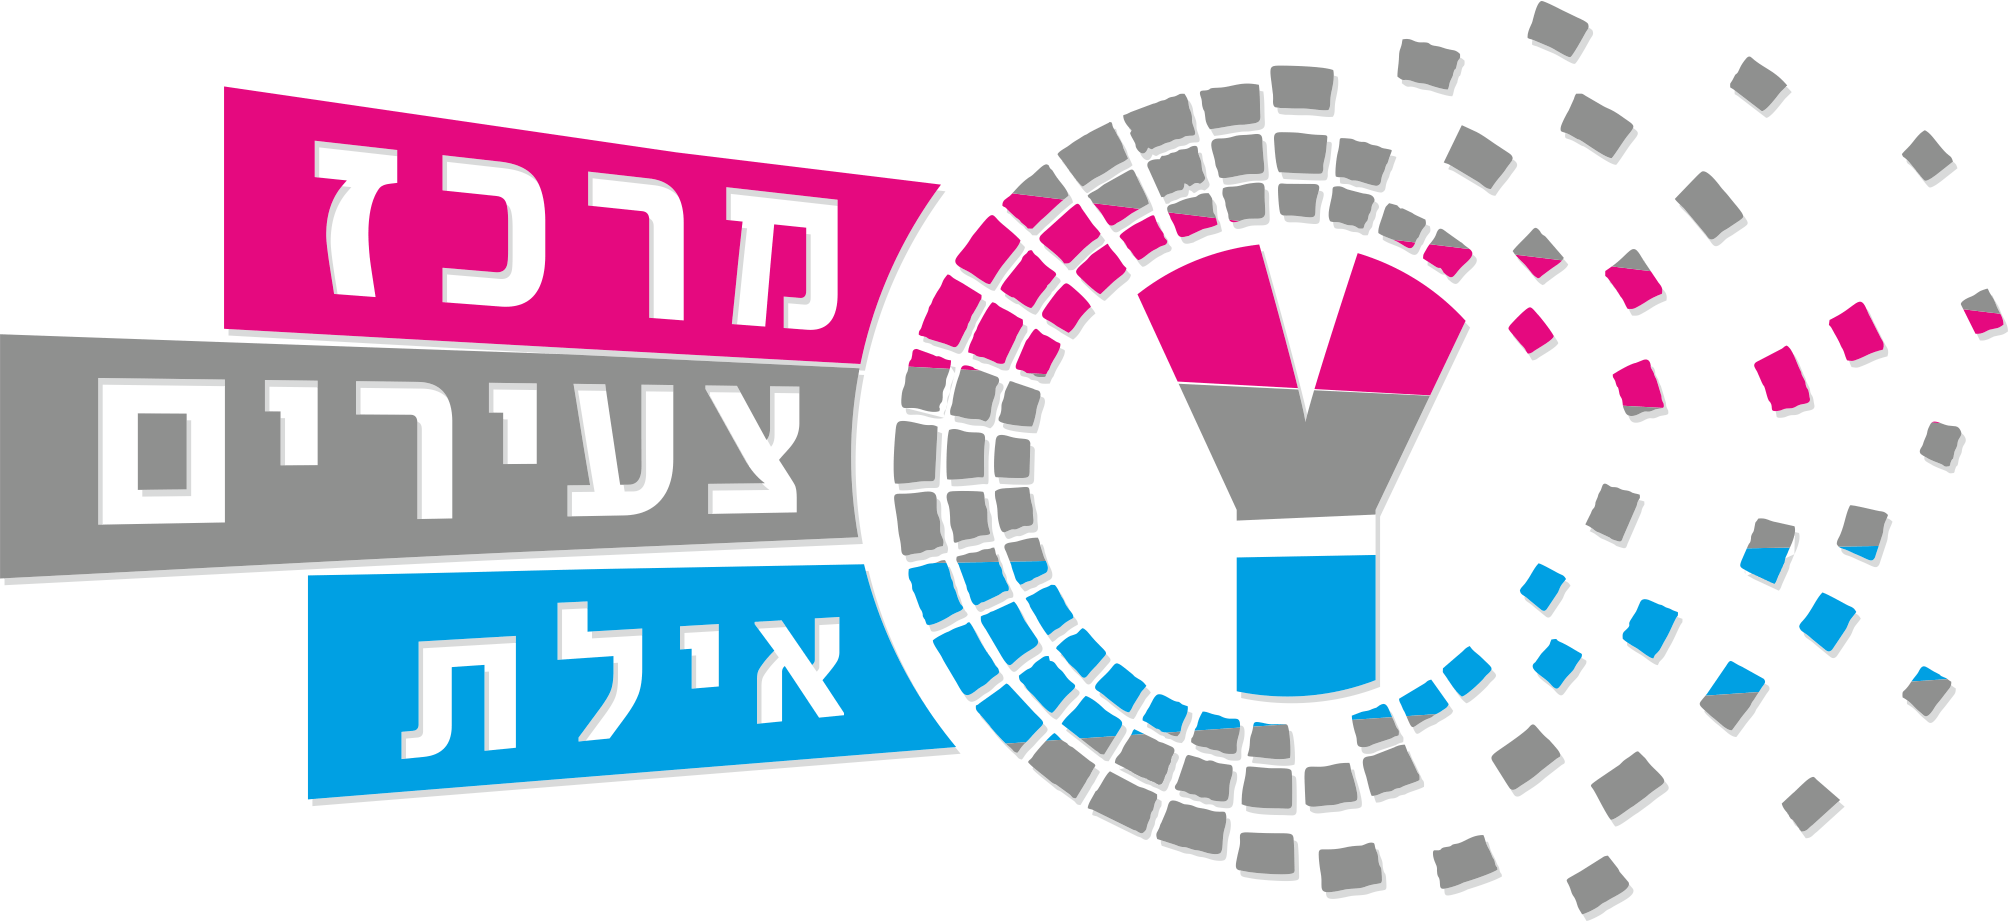 לוגו מדינת ישראל